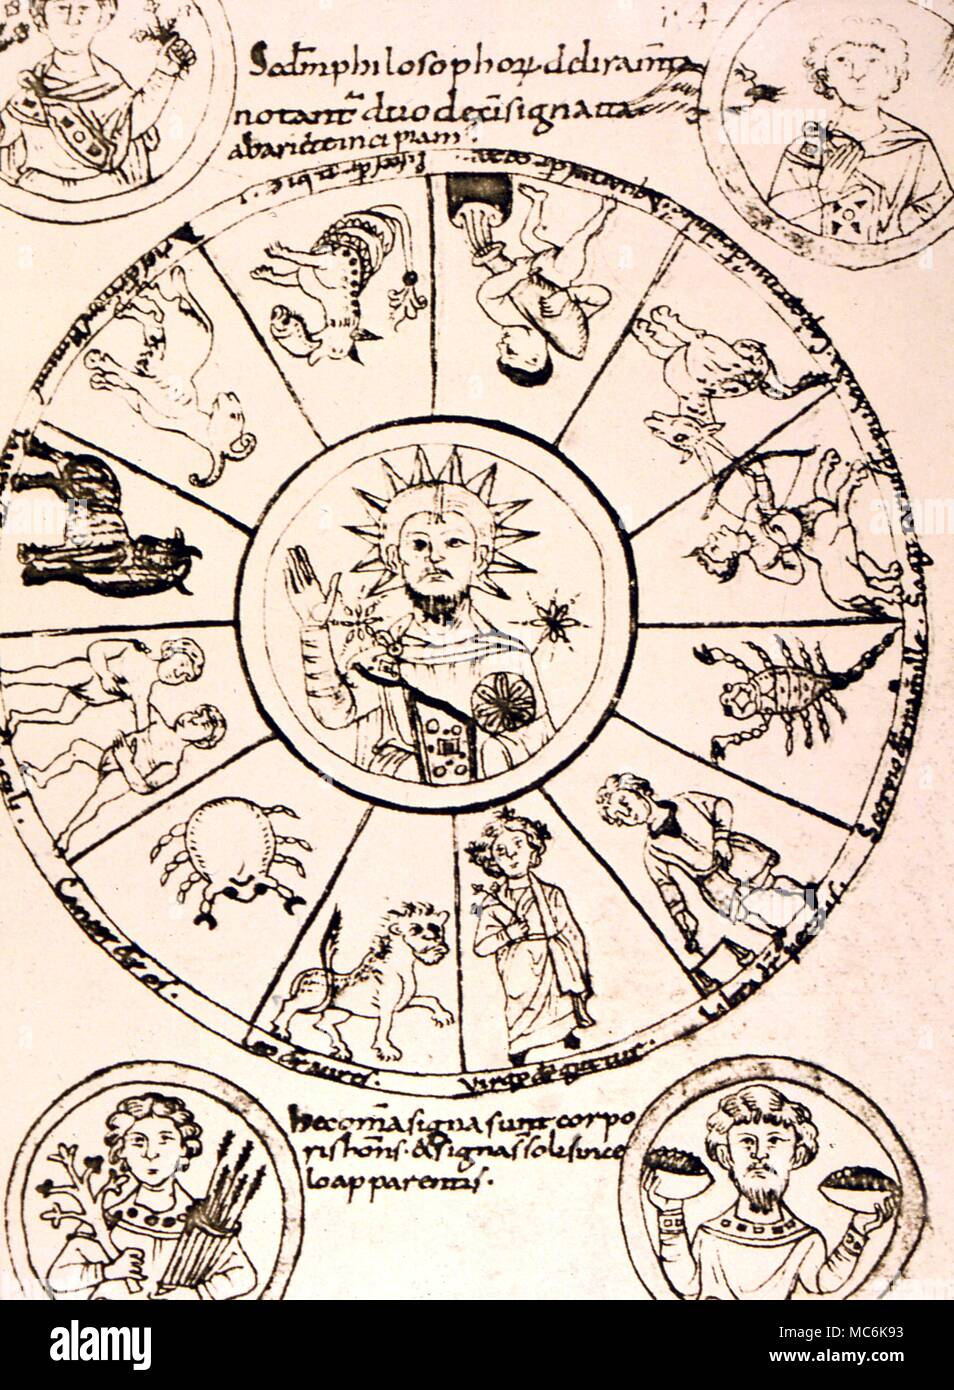 Zodiacs - copia medieval de un zodíaco clásico con escribas notas adicionales, quizás décimo siglo; bibel.Nationale de París. Mss lat.7028 Foto de stock